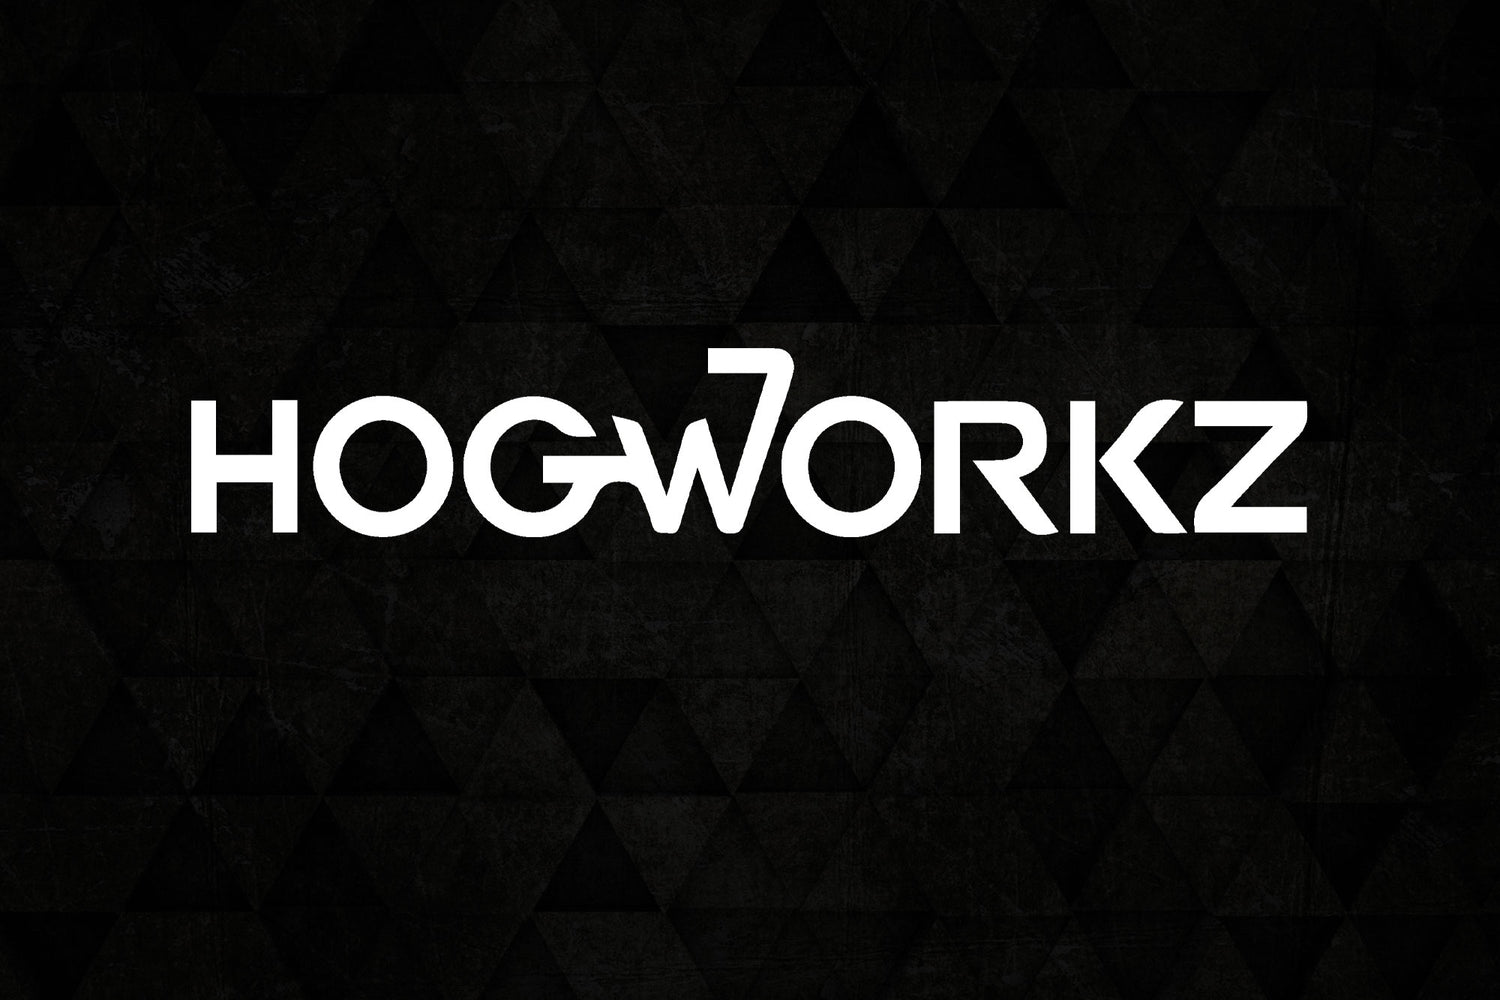 HogWorkz